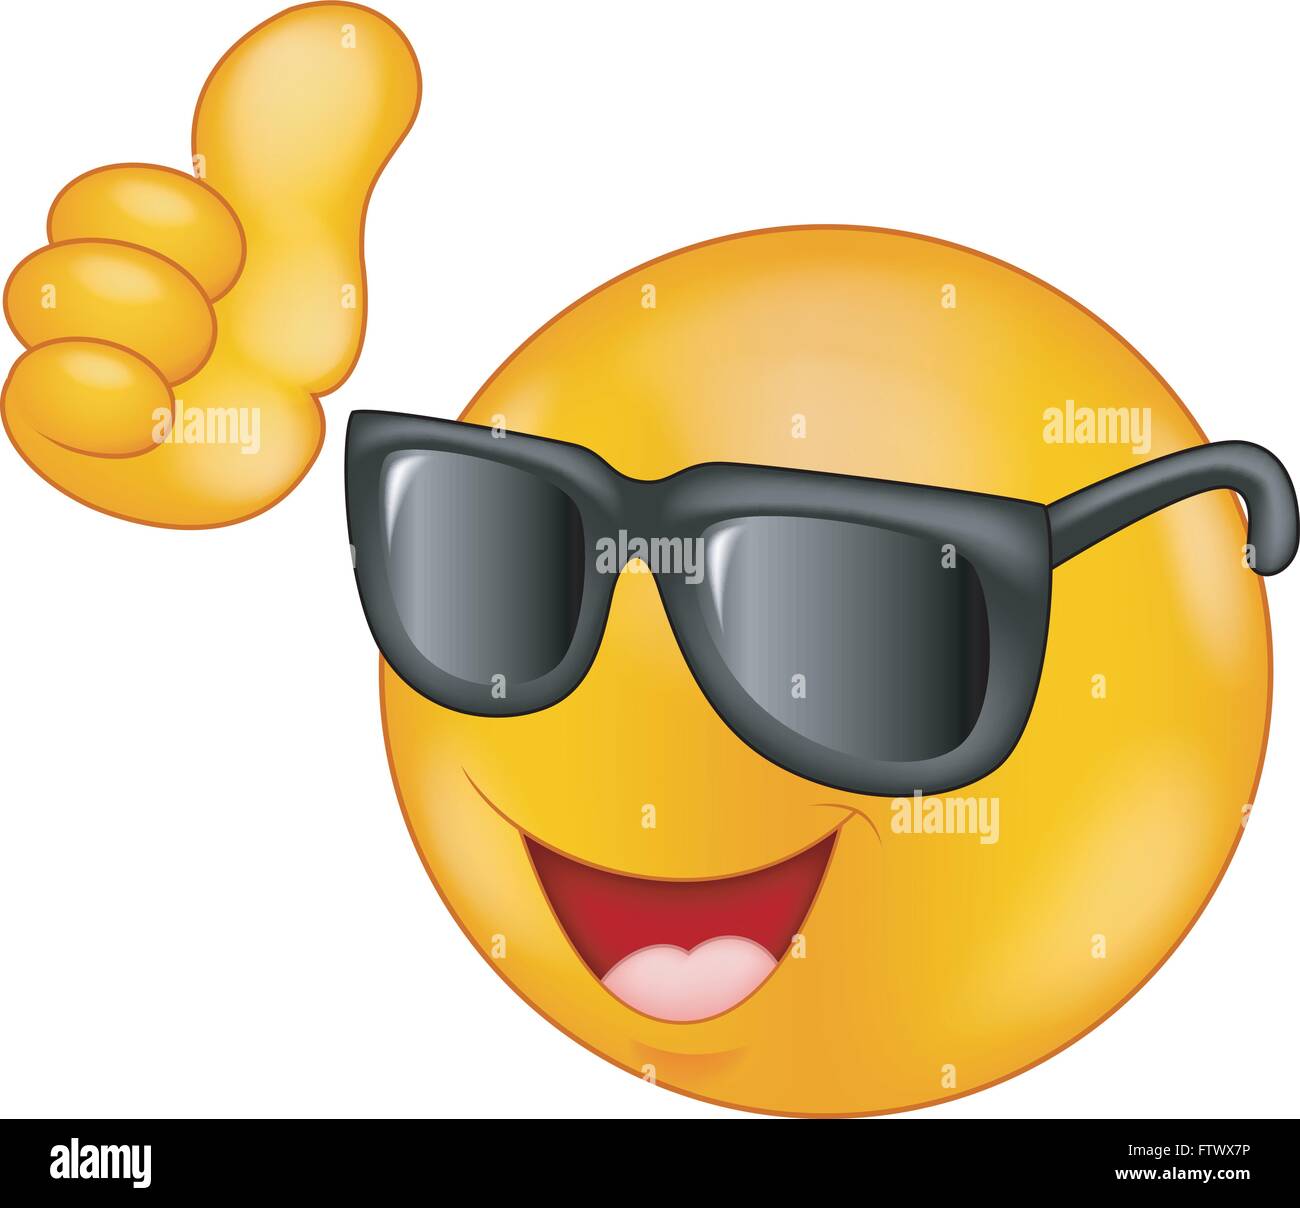 Smiling Smiley mit Sonnenbrille, Daumen hoch Stock-Vektorgrafik - Alamy